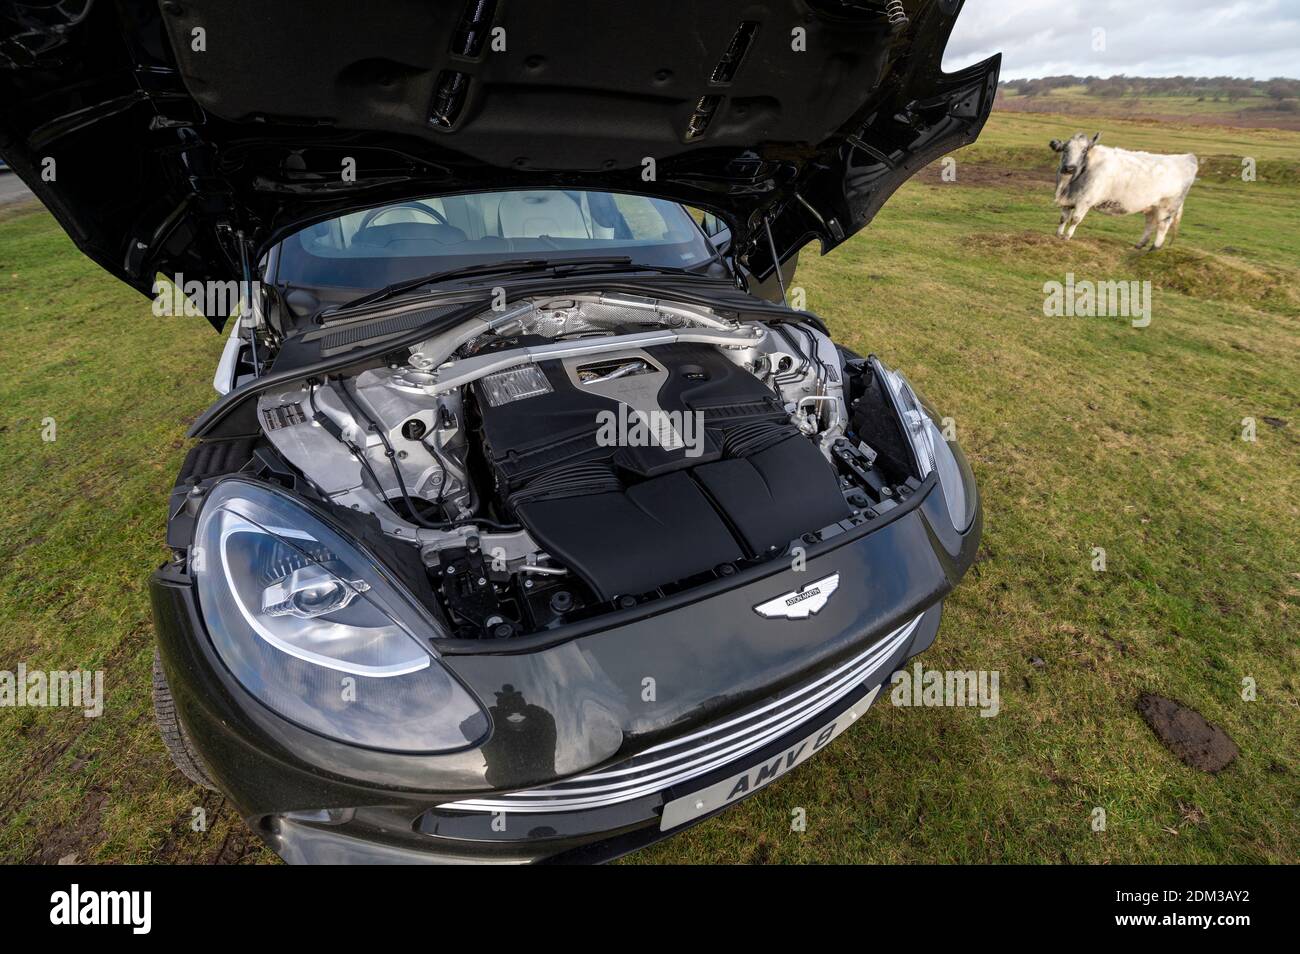 Moteur d'un vus V8 Aston Martin DBX de 4 litres avec une vitesse maximale de 180 km/h et un prix à partir de 158,000 £. Banque D'Images